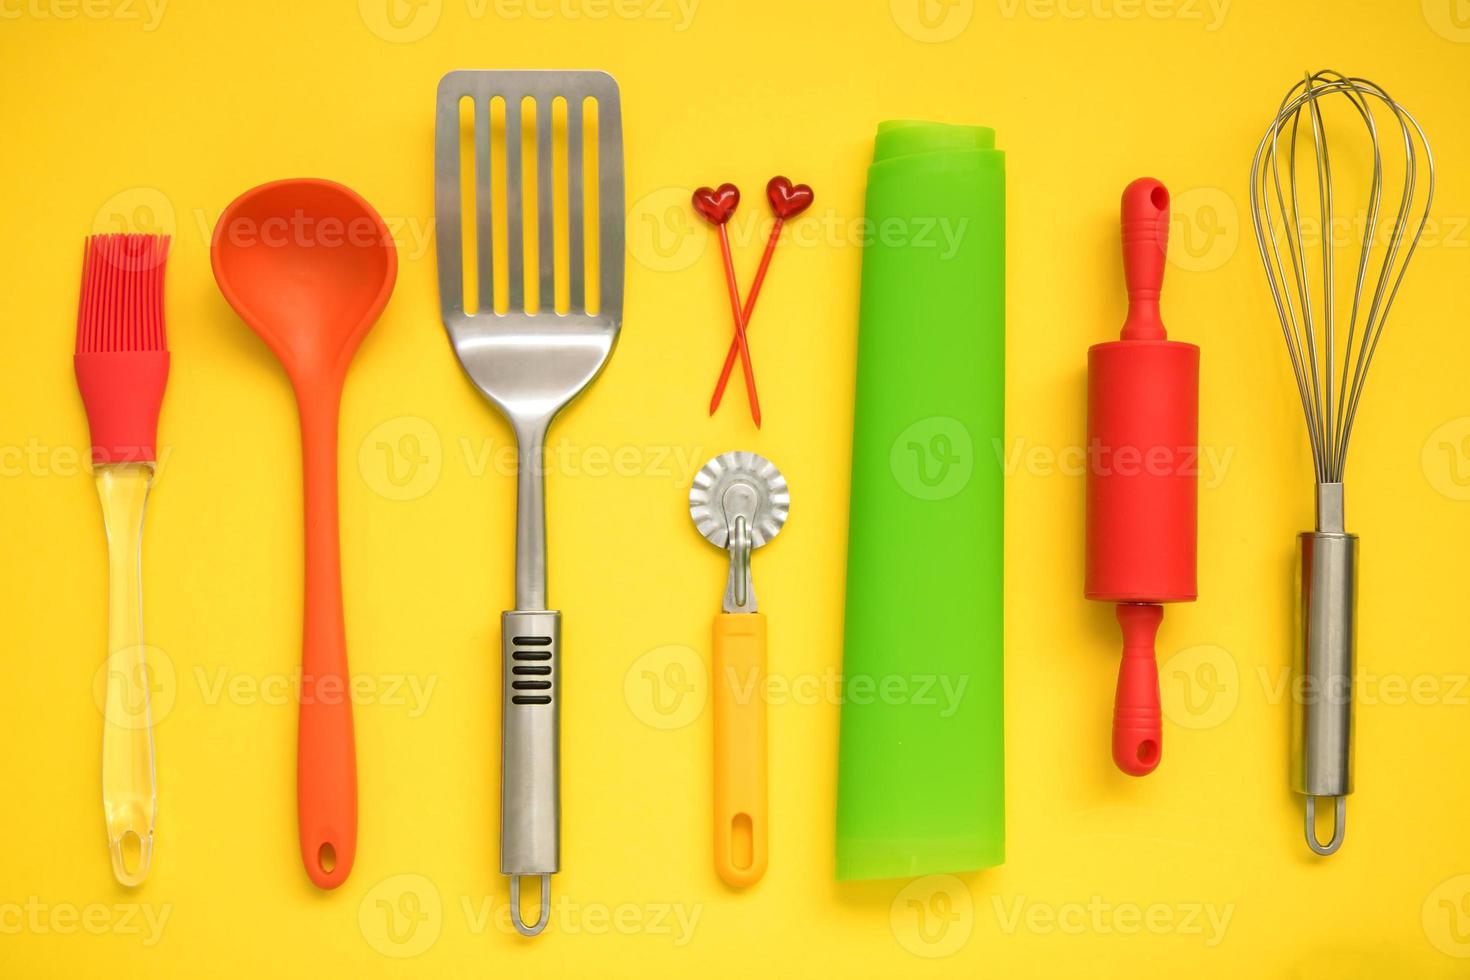 kulinariska bakgrund, kulinariska Tillbehör på en gul bakgrund - slitsad sked, deg kniv, spatel, vispa, borsta, spett, silikon matta, rullande stift, slev foto